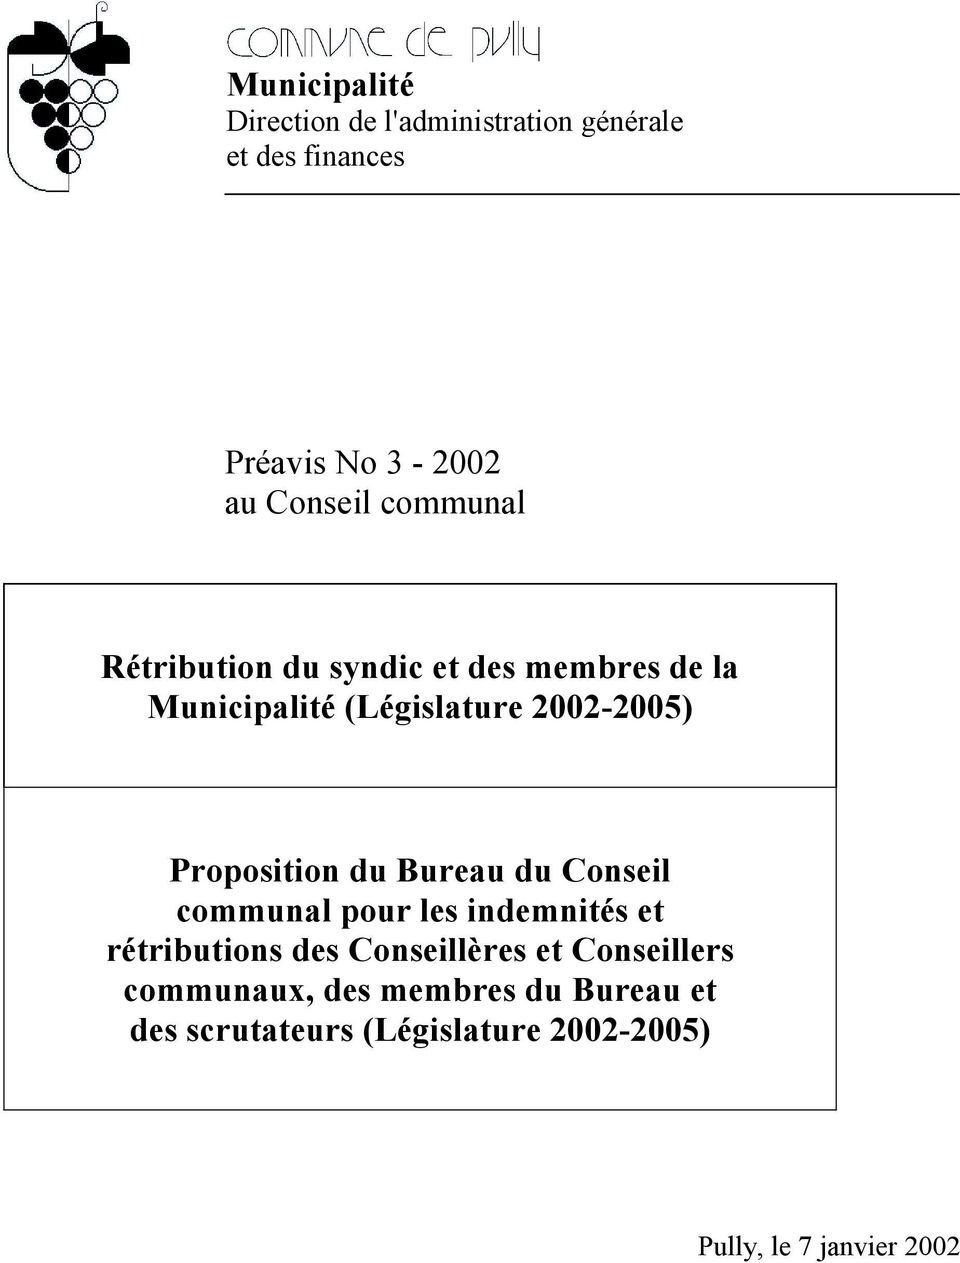 Proposition du Bureau du Conseil communal pour les indemnités et rétributions des Conseillères et